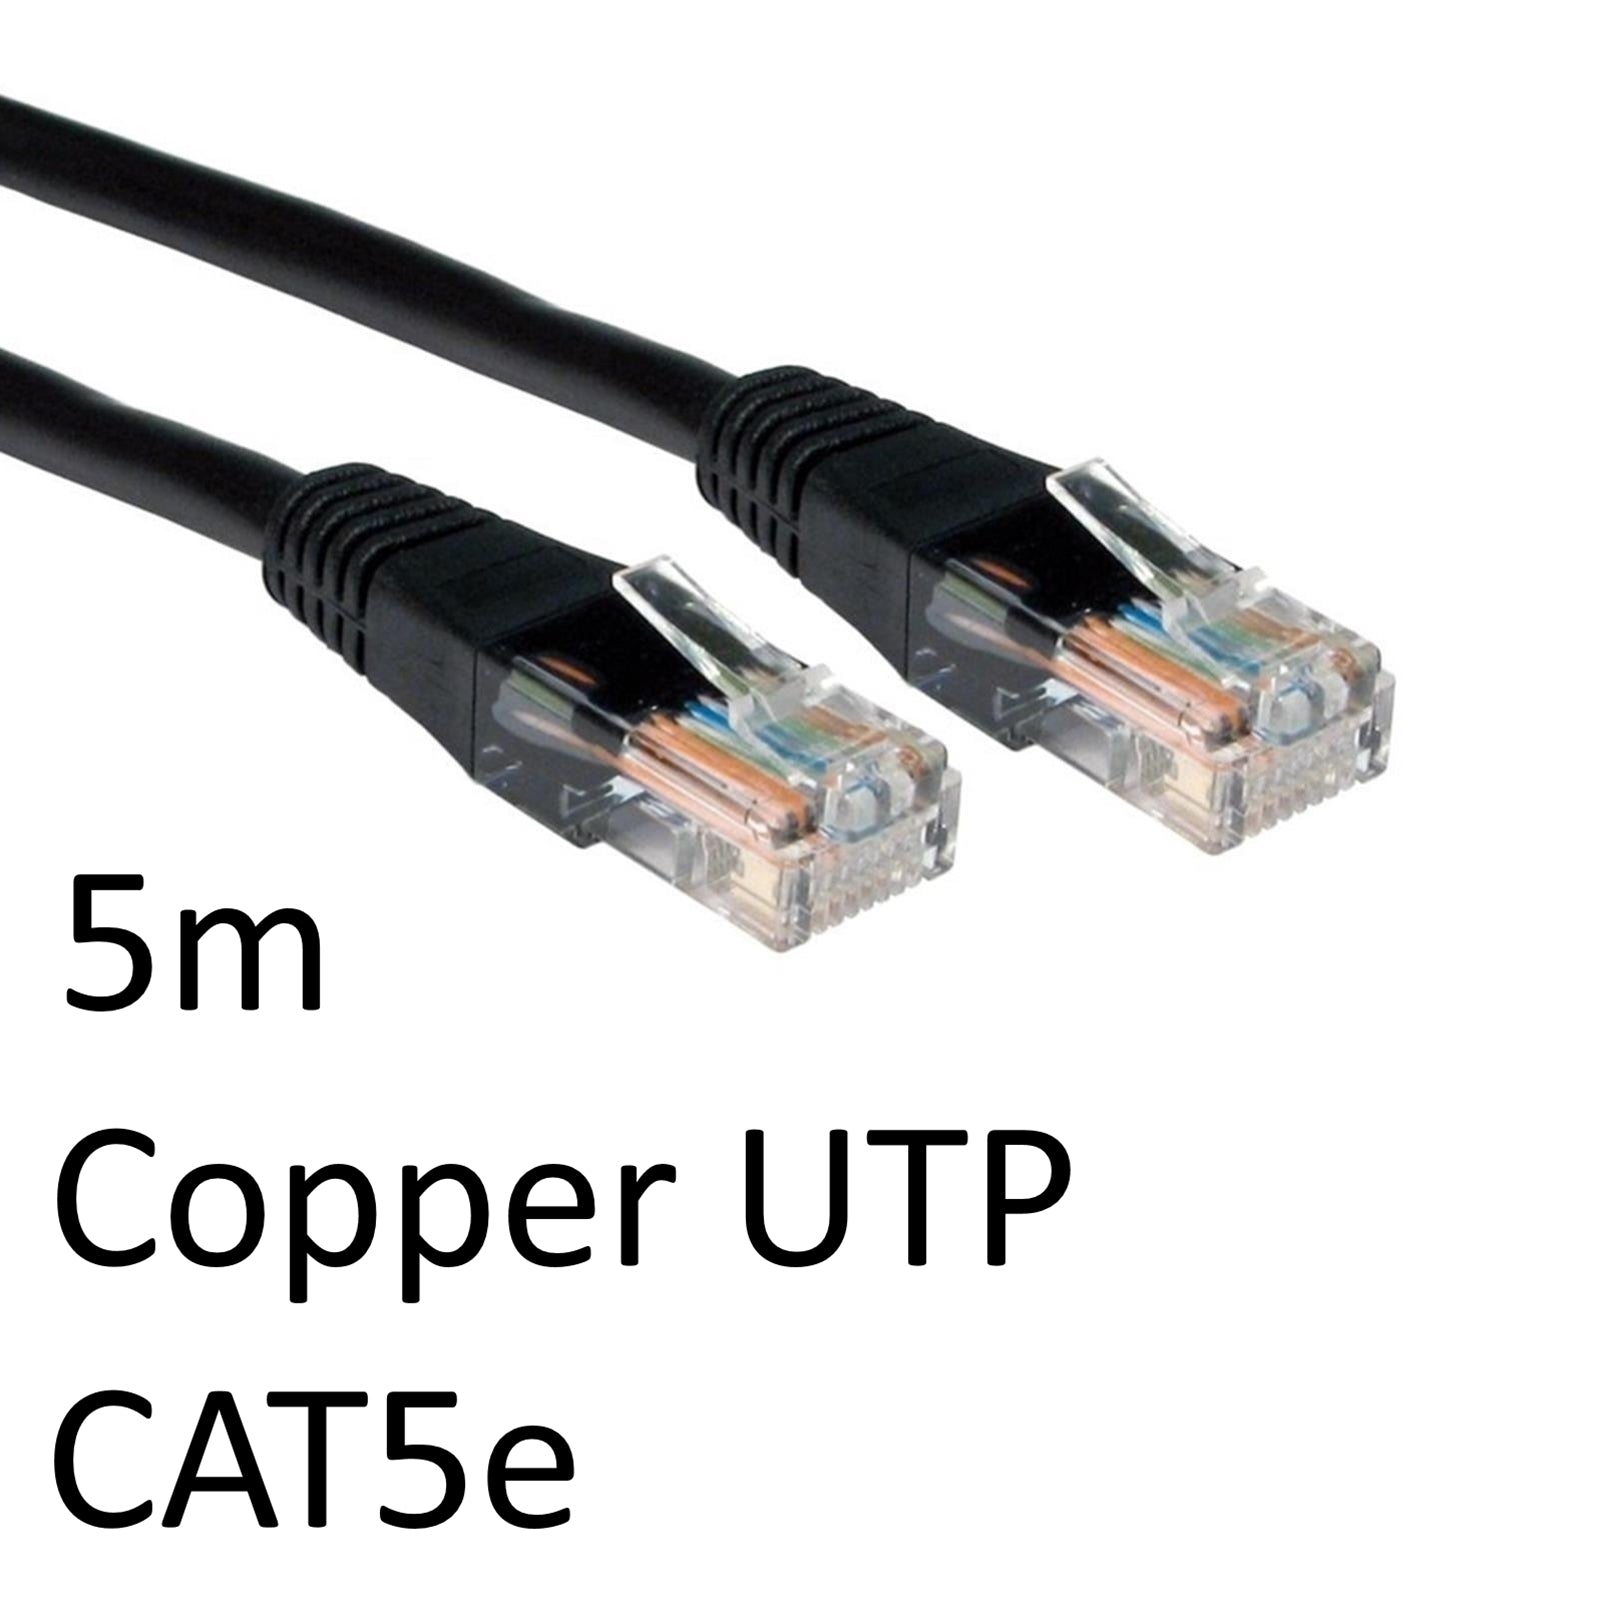 Photos - Cable (video, audio, USB) Target RJ45 (M) to RJ45 (M) CAT5e 5m Black OEM Moulded Boot Copper UTP Net 